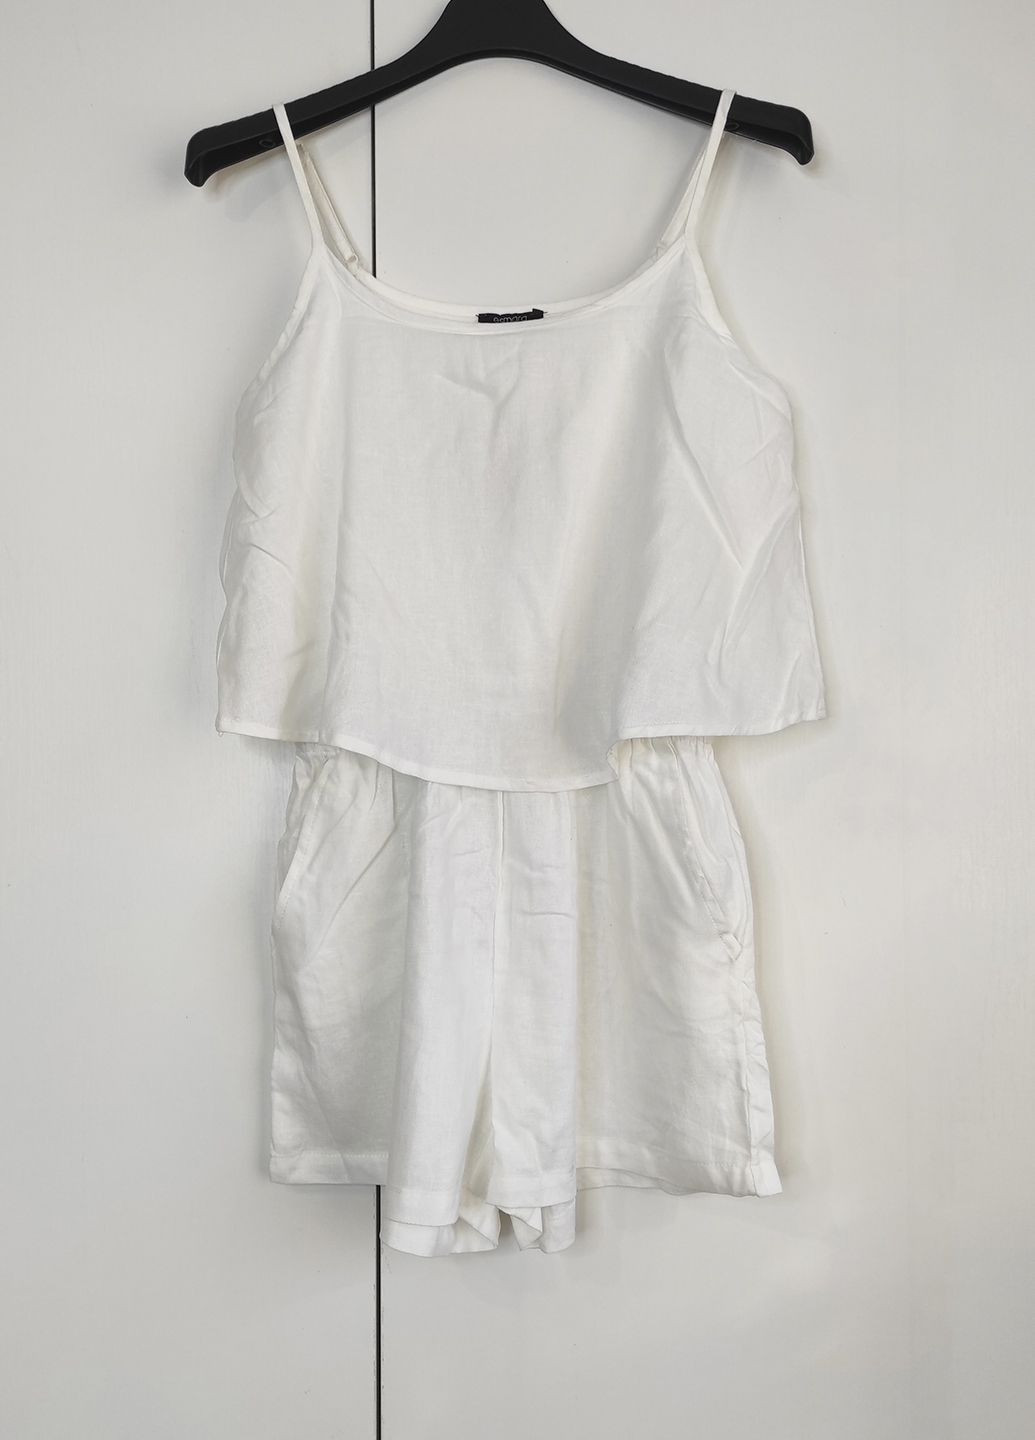 Комбинезон ромпер льняной женский Esmara комбинезон-шорты однотонный белый праздничный, повседневный, домашний, пляжный хлопок органический, лен